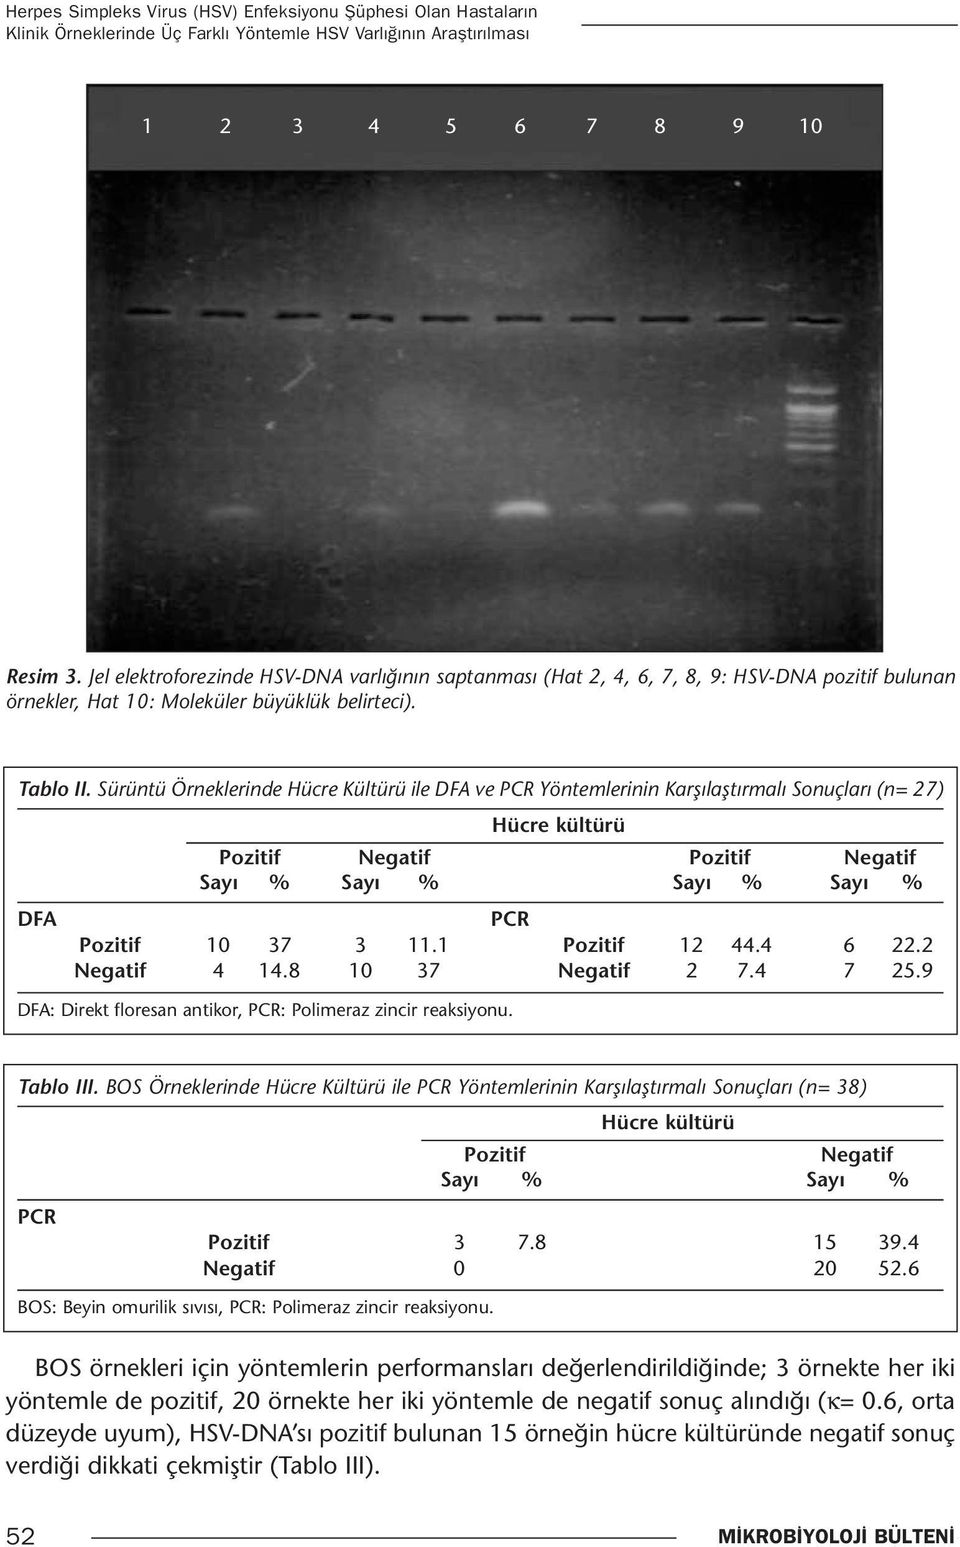 Sürüntü Örneklerinde Hücre Kültürü ile DFA ve PCR Yöntemlerinin Karşılaştırmalı Sonuçları (n= 27) Hücre kültürü Pozitif Negatif Pozitif Negatif Sayı % Sayı % Sayı % Sayı % DFA PCR Pozitif 10 37 3 11.